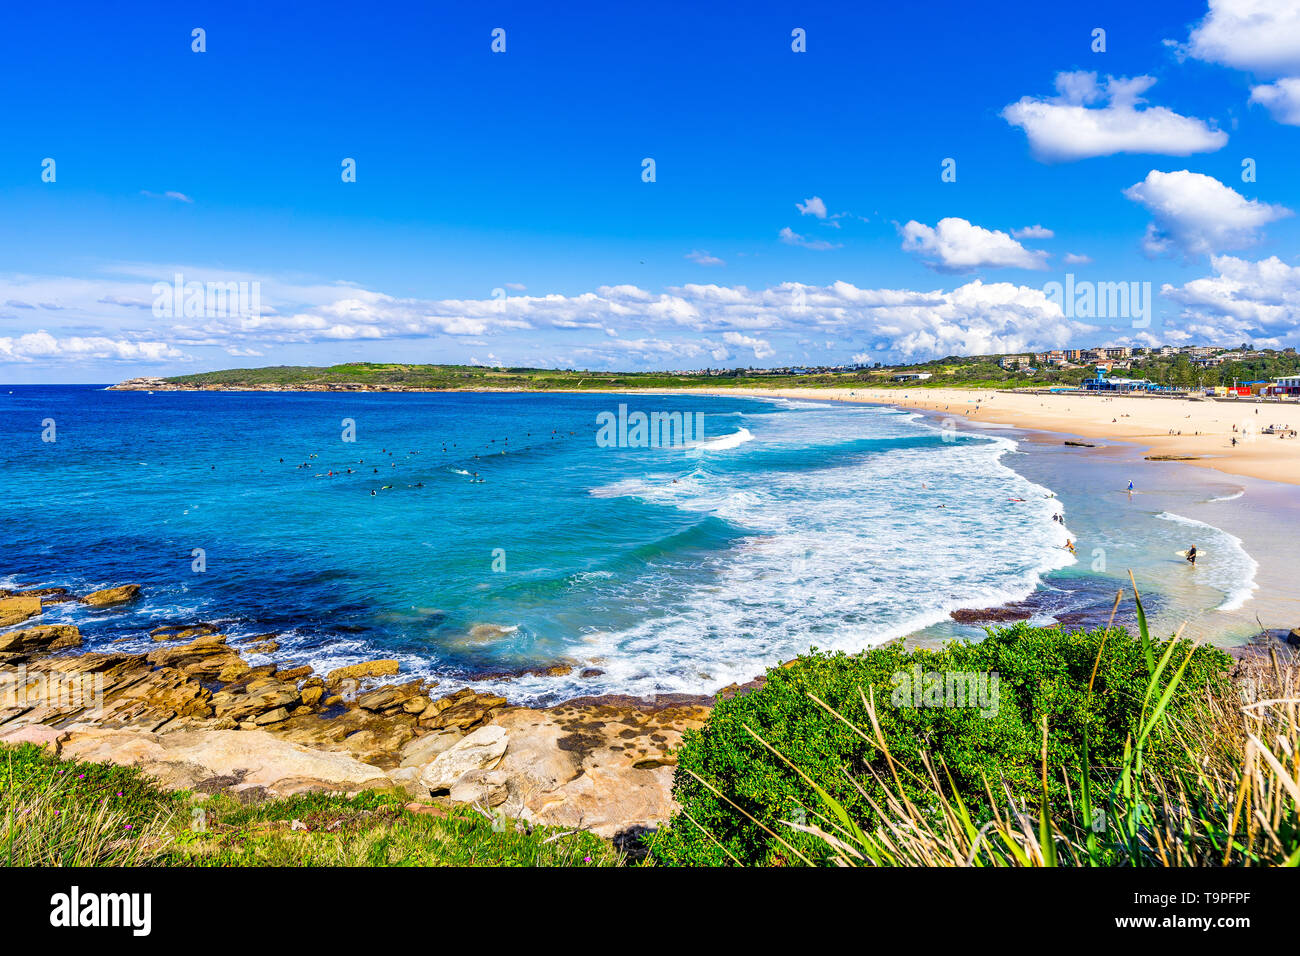 En Maroubra Beach en Sydney, Australia Foto de stock